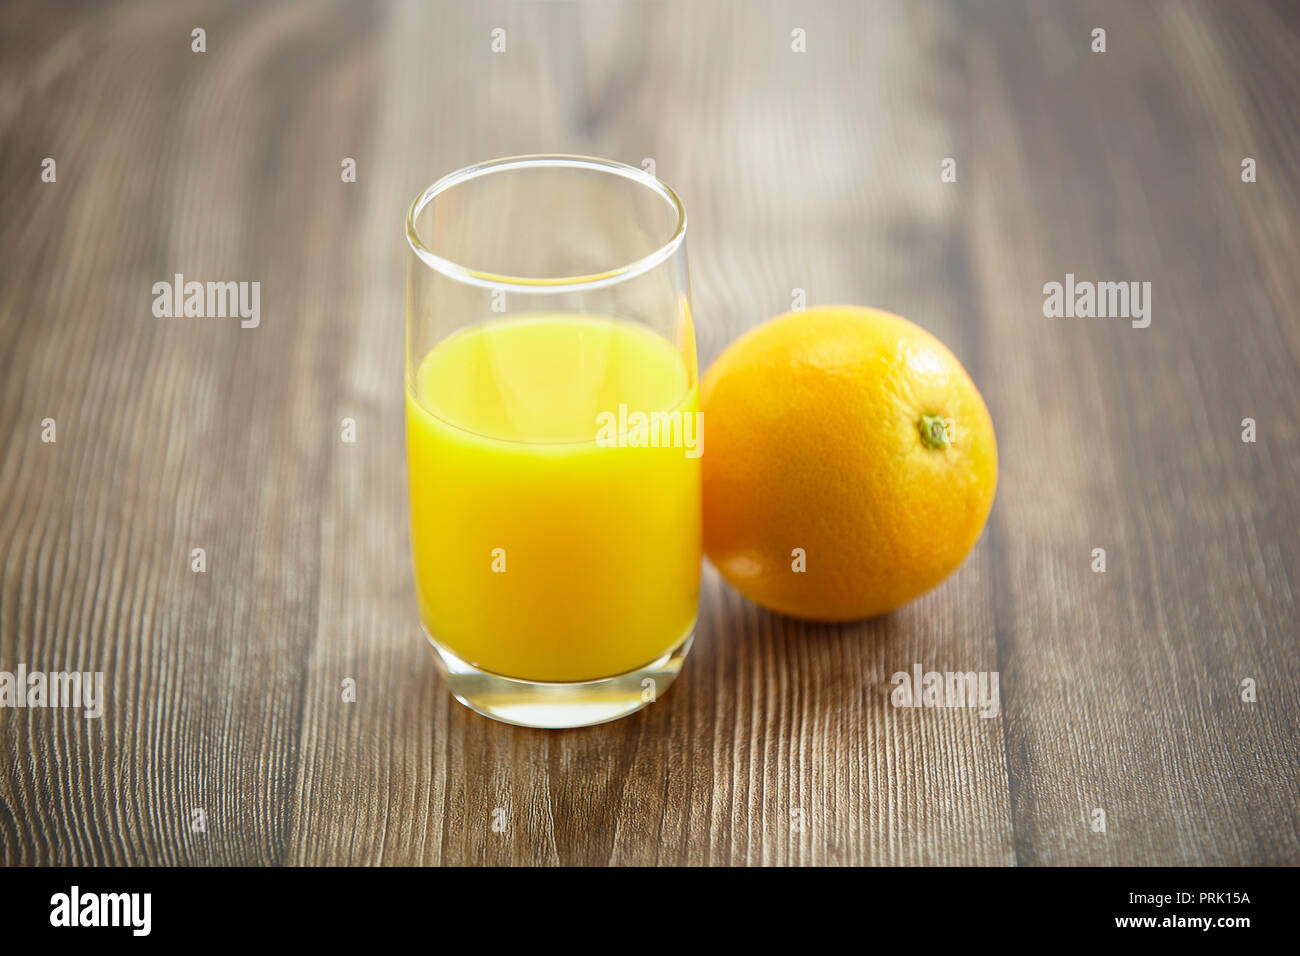 Une orange et un verre de jus d'orange sur la surface en bois dur. Banque D'Images